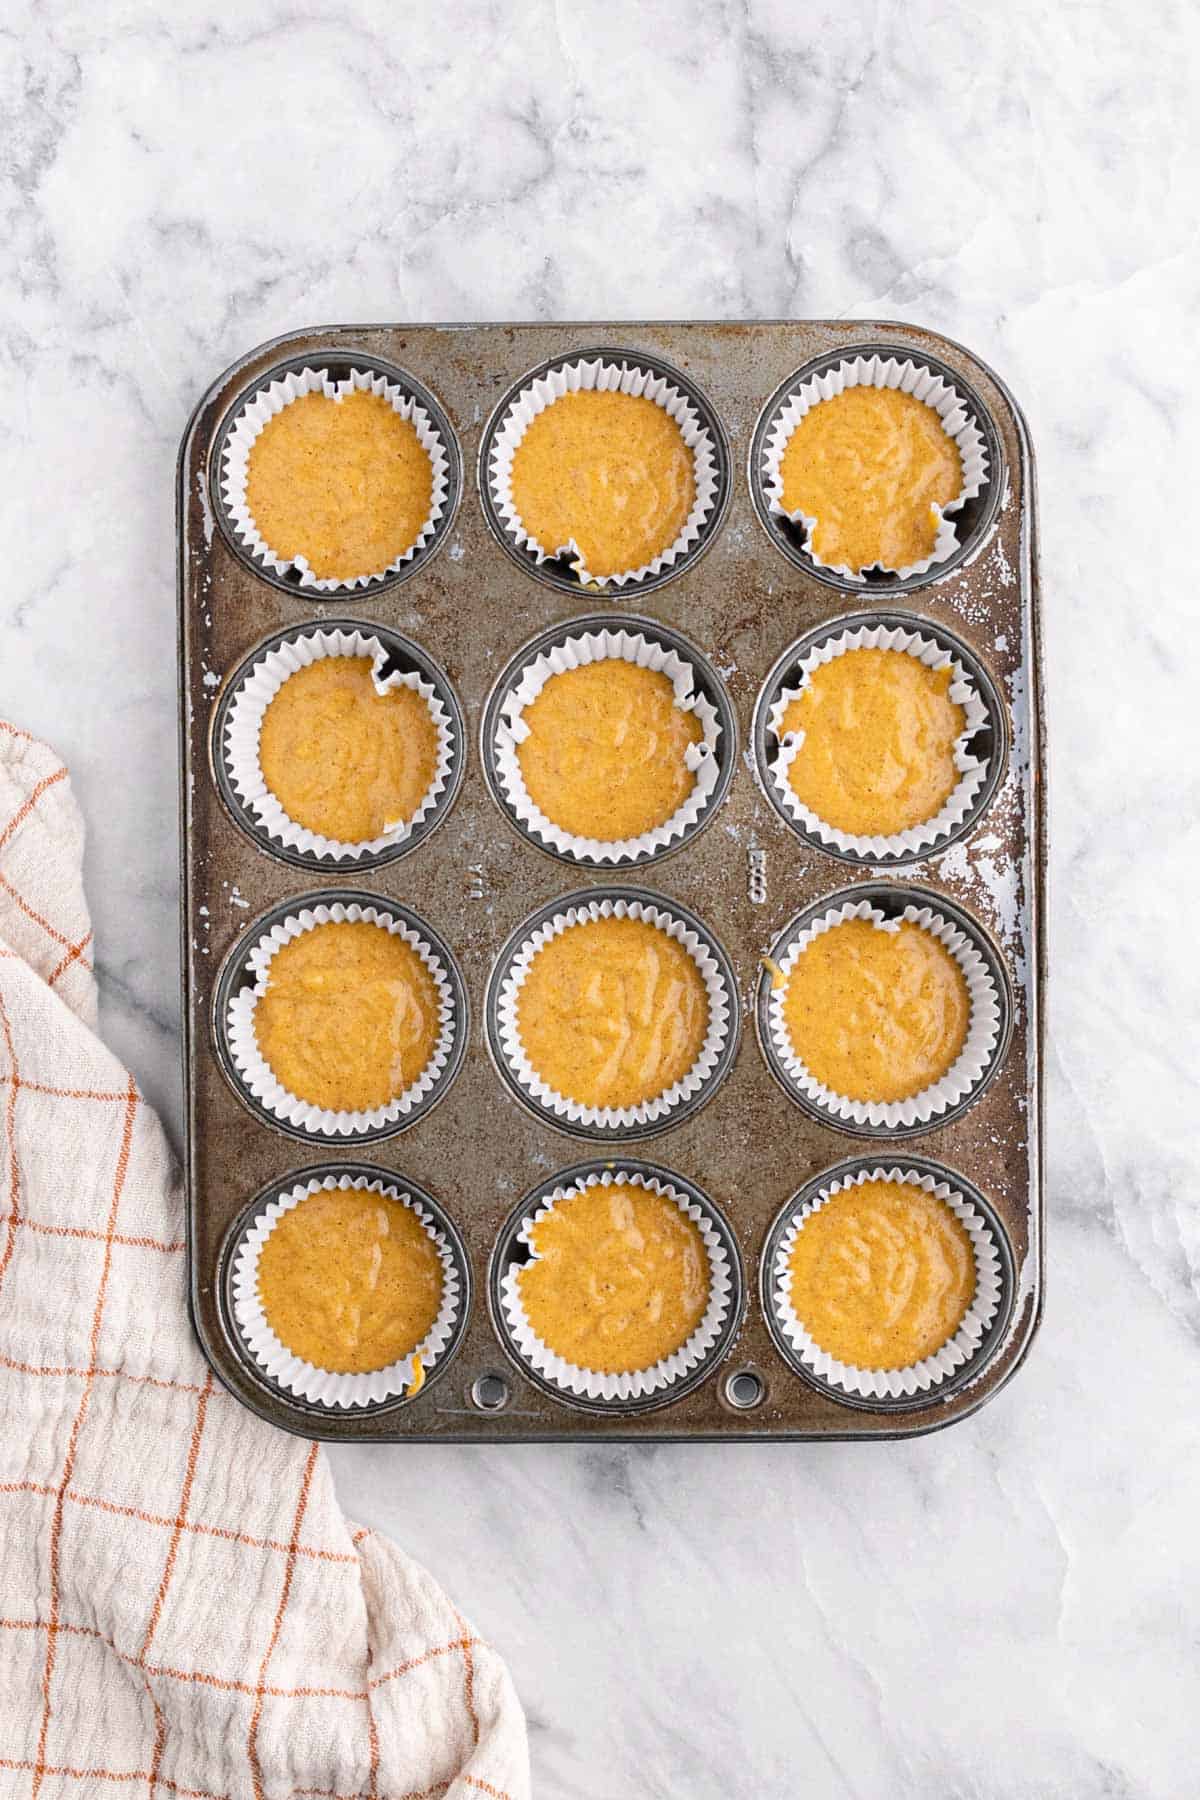 Pumpkin cupcake batter in the cupcake pan.